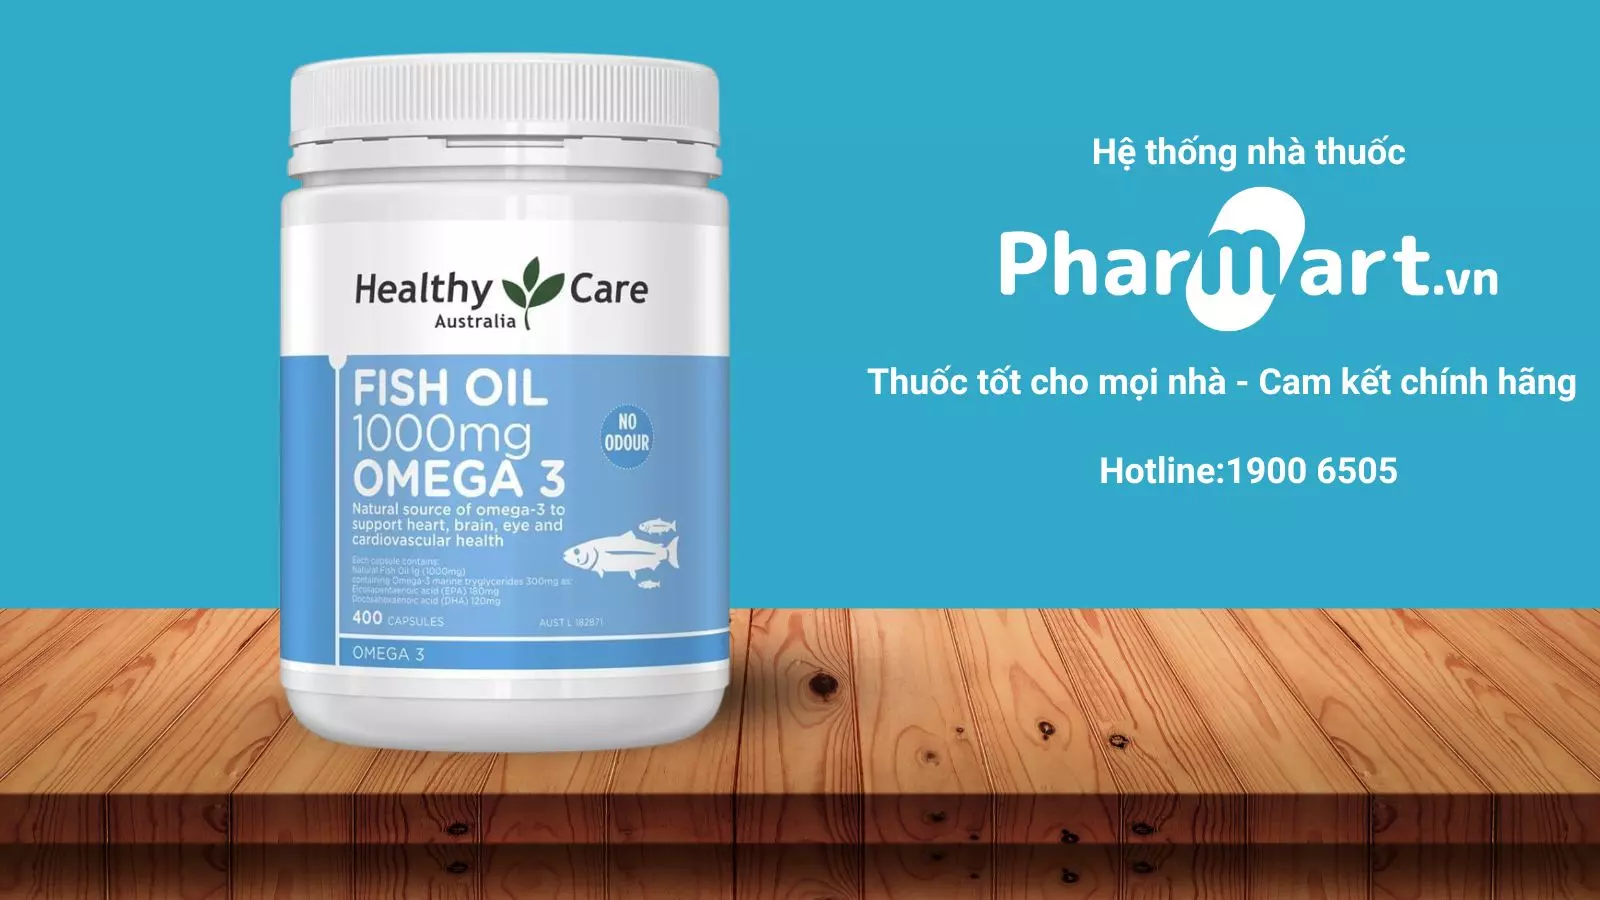 Viên uống Healthy Care Oil được phân phối chính hãng tại nhà thuốc Pharmart